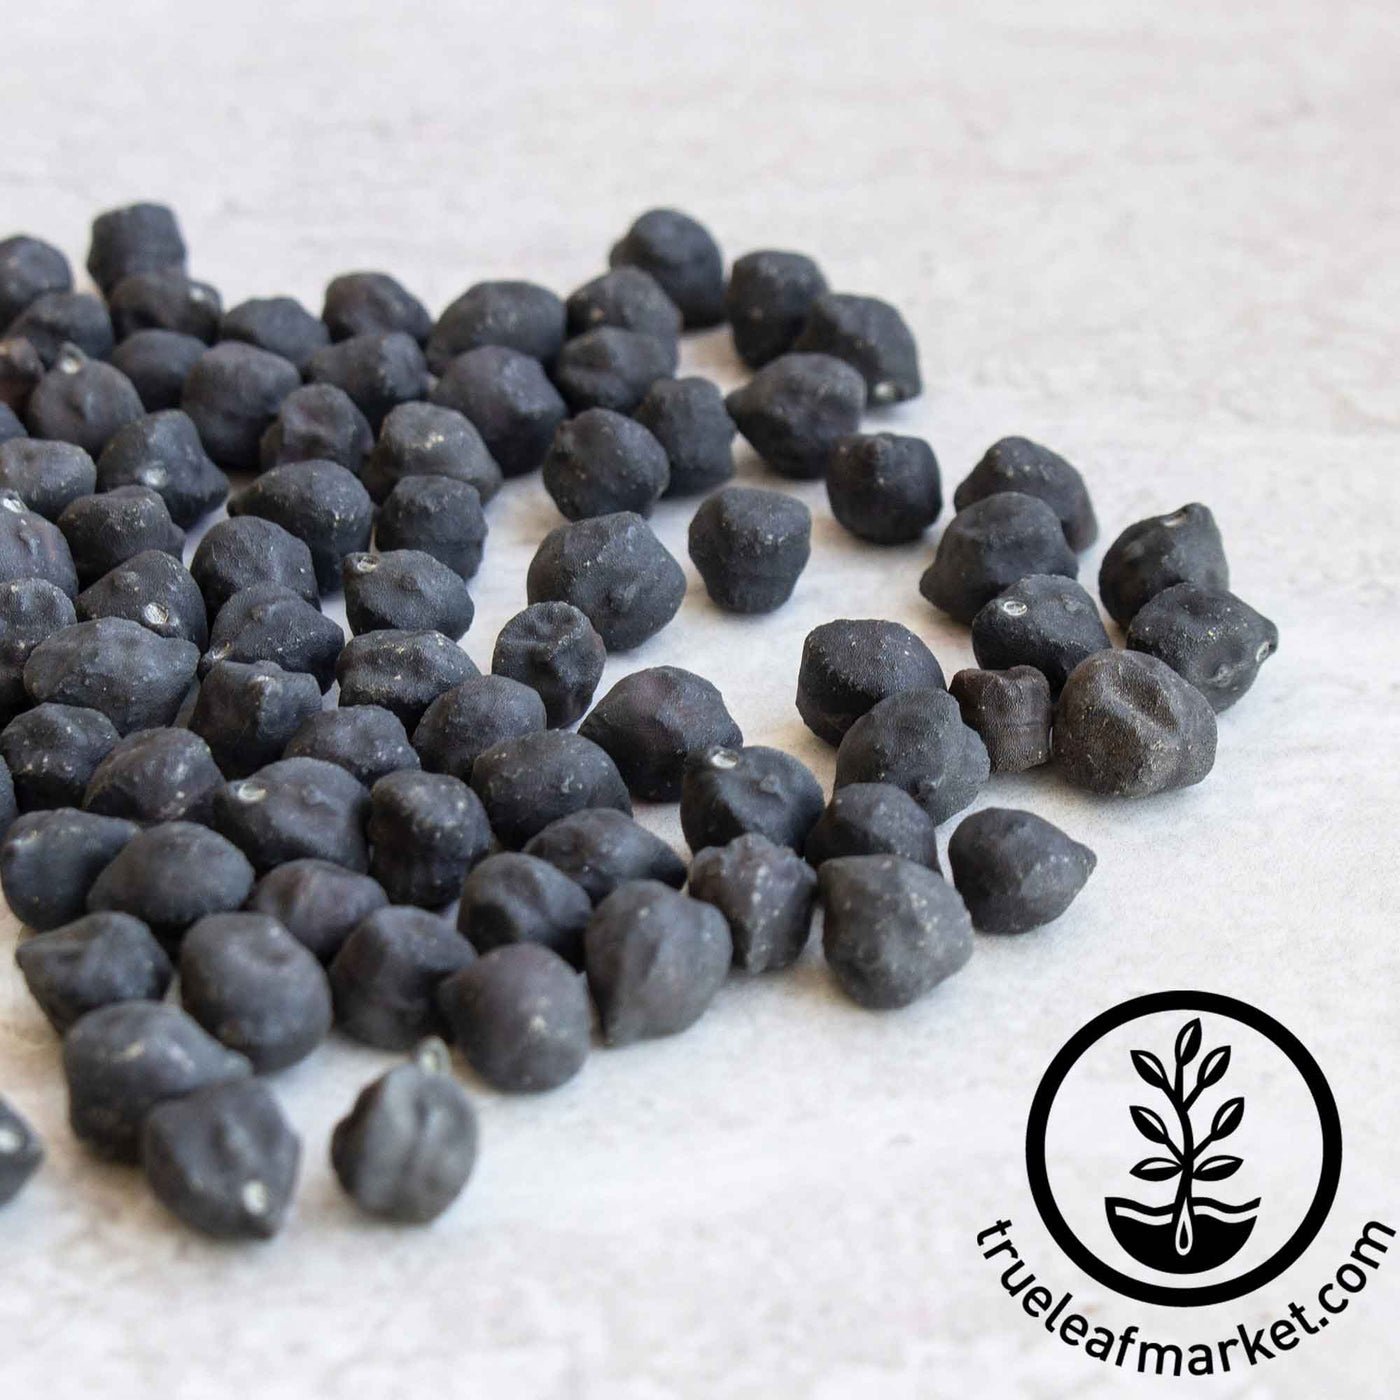 Black Butte Chickpeas (Black Garbanzo Beans) Organic 10lbs Pacific